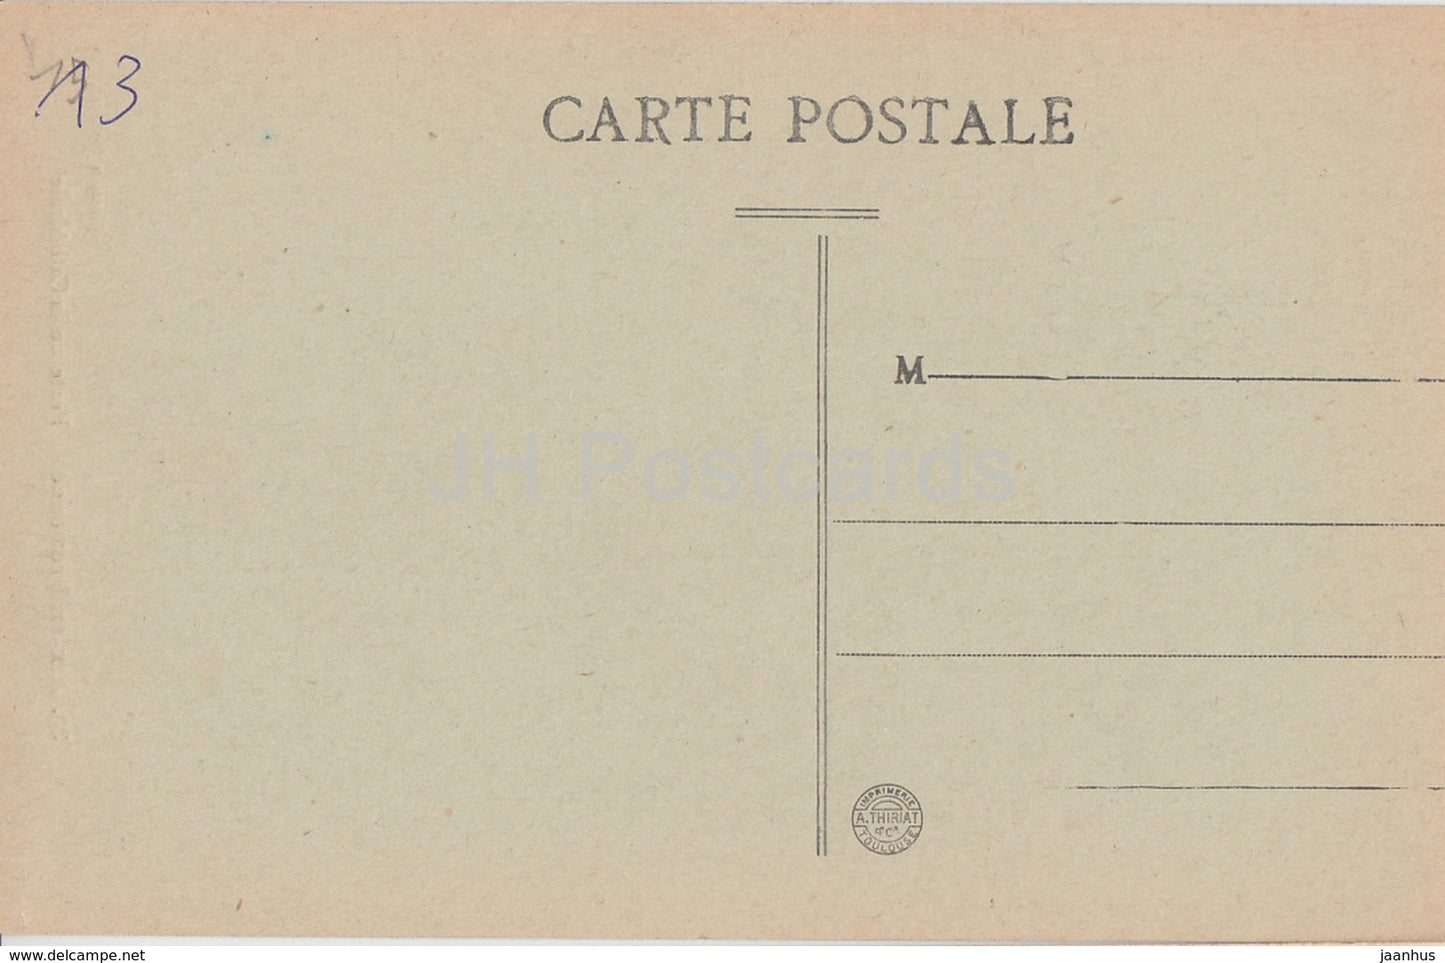 Aix en Provence - Porte de la Cathédrale - cathédrale - 30 - carte postale ancienne - France - inutilisée